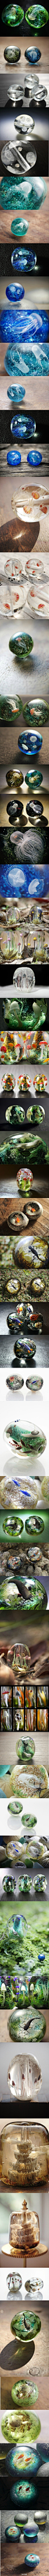 日本彩元堂制作的微型琉璃珠，两三厘米的圆珠宛如一个神奇的自然世界，各种逼真迷人的水母菌，蘑菇菌，以及神秘海底之下的各类生物。琉璃珠都有穿孔，每一枚都精美诡谲。